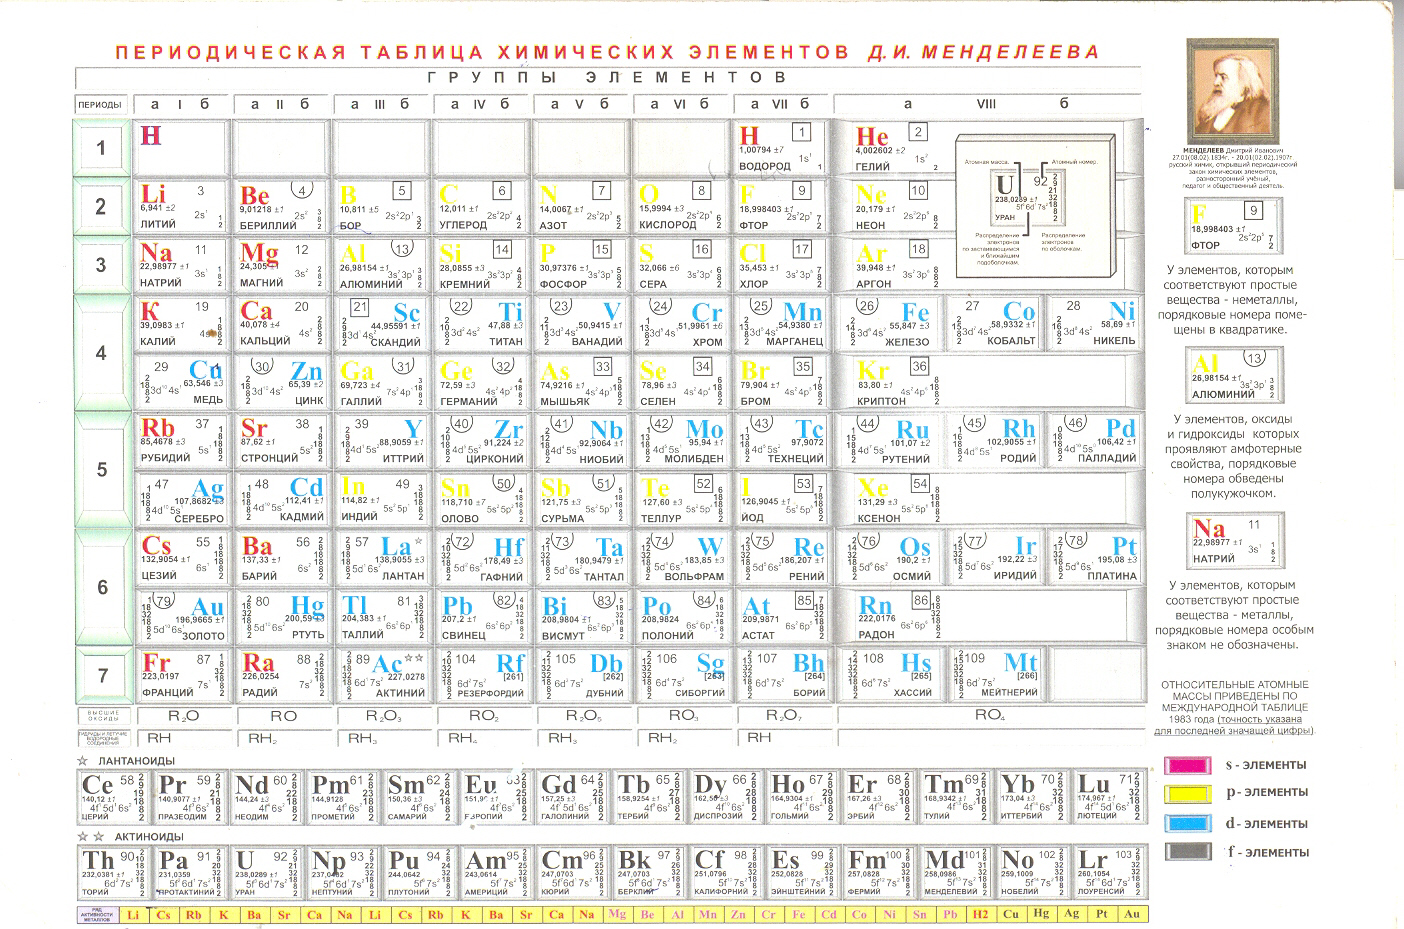 Таблицу менделеева схему. Периодическая система химических элементов д.и. Менделеева. Современная таблица Менделеева 118 элементов. Периодическая система Менделеева с энергетическими уровнями. Периодическая таблица Менделеева шпаргалка.